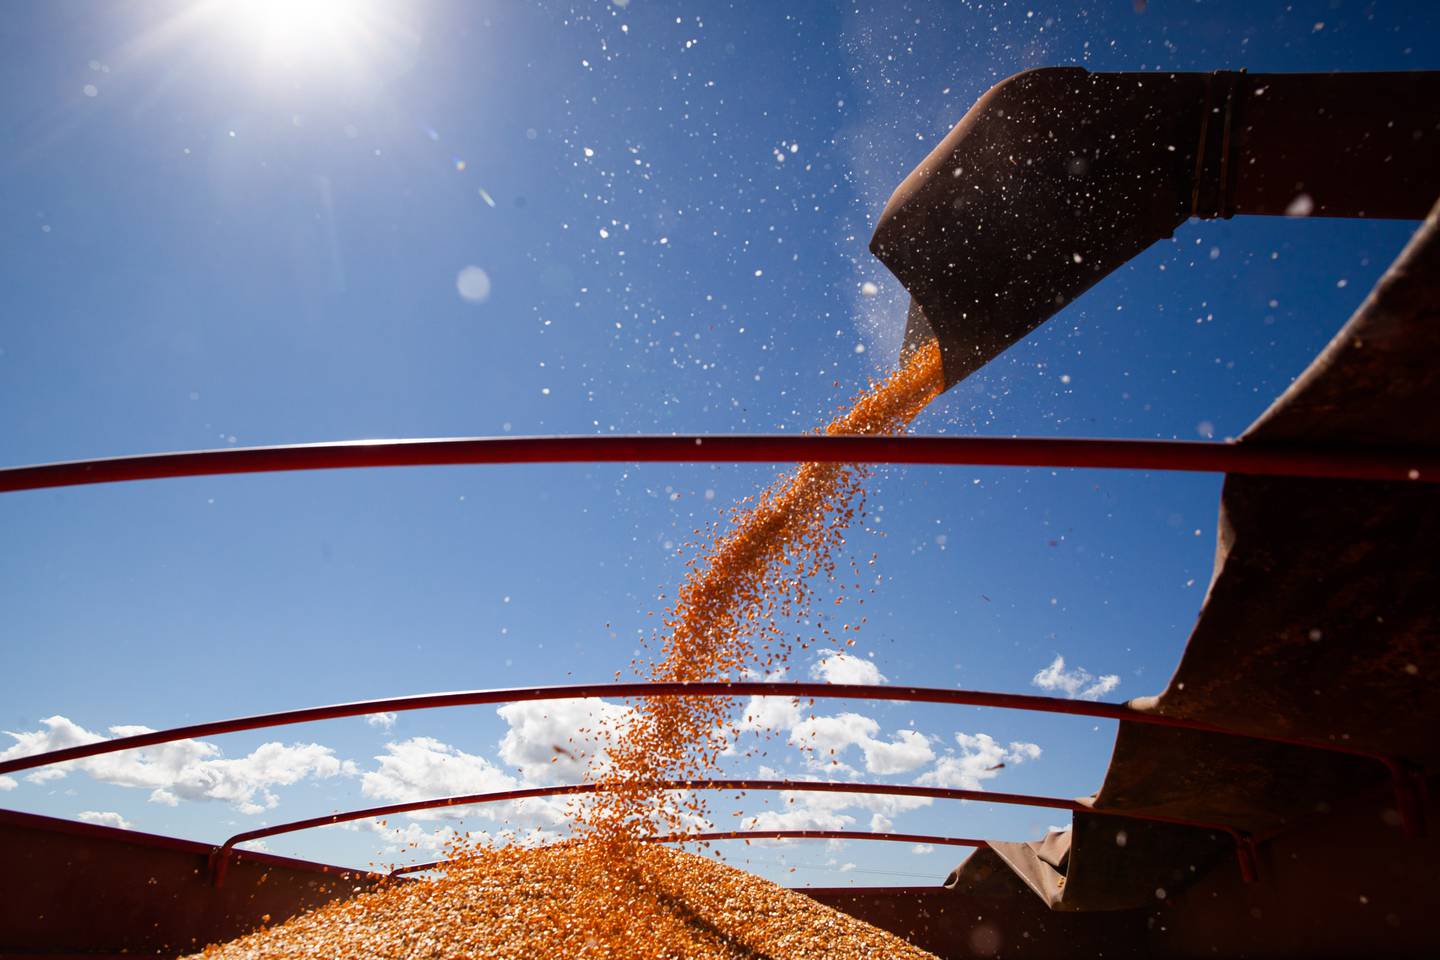 Oferta da segunda safra pode minimizar perdas registradas nas lavouras de soja neste ano